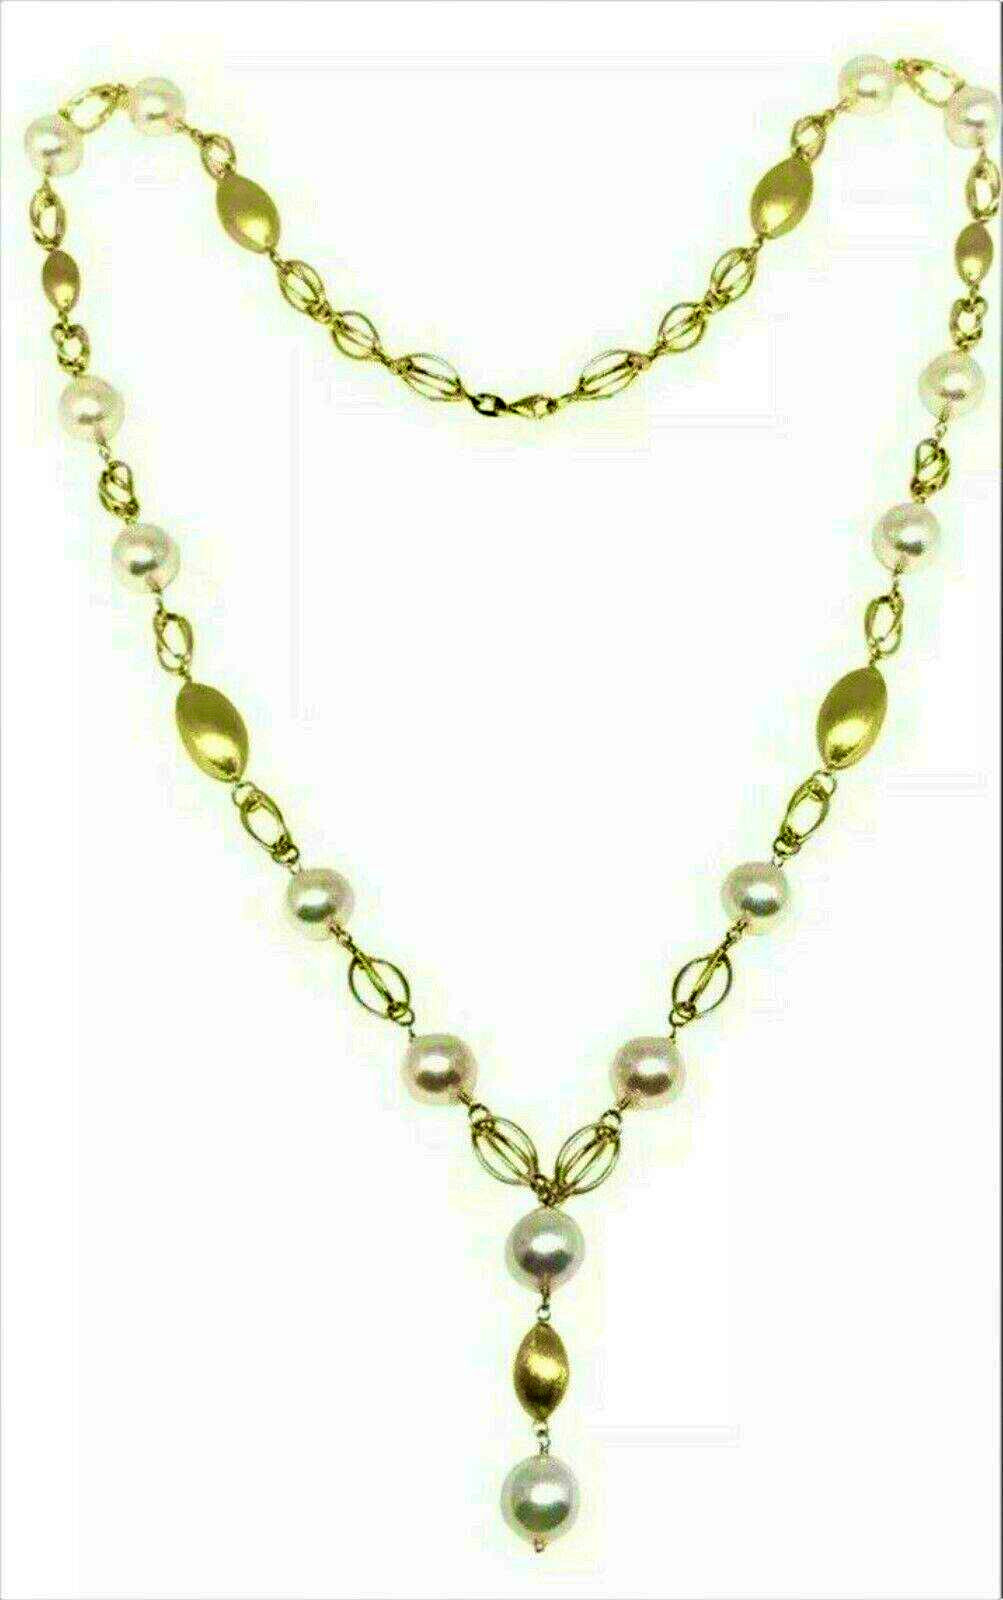 Akoya Pearl Necklace Earrings Set 9.8 mm 25.5" 14k Gold Certified $9,500 715357